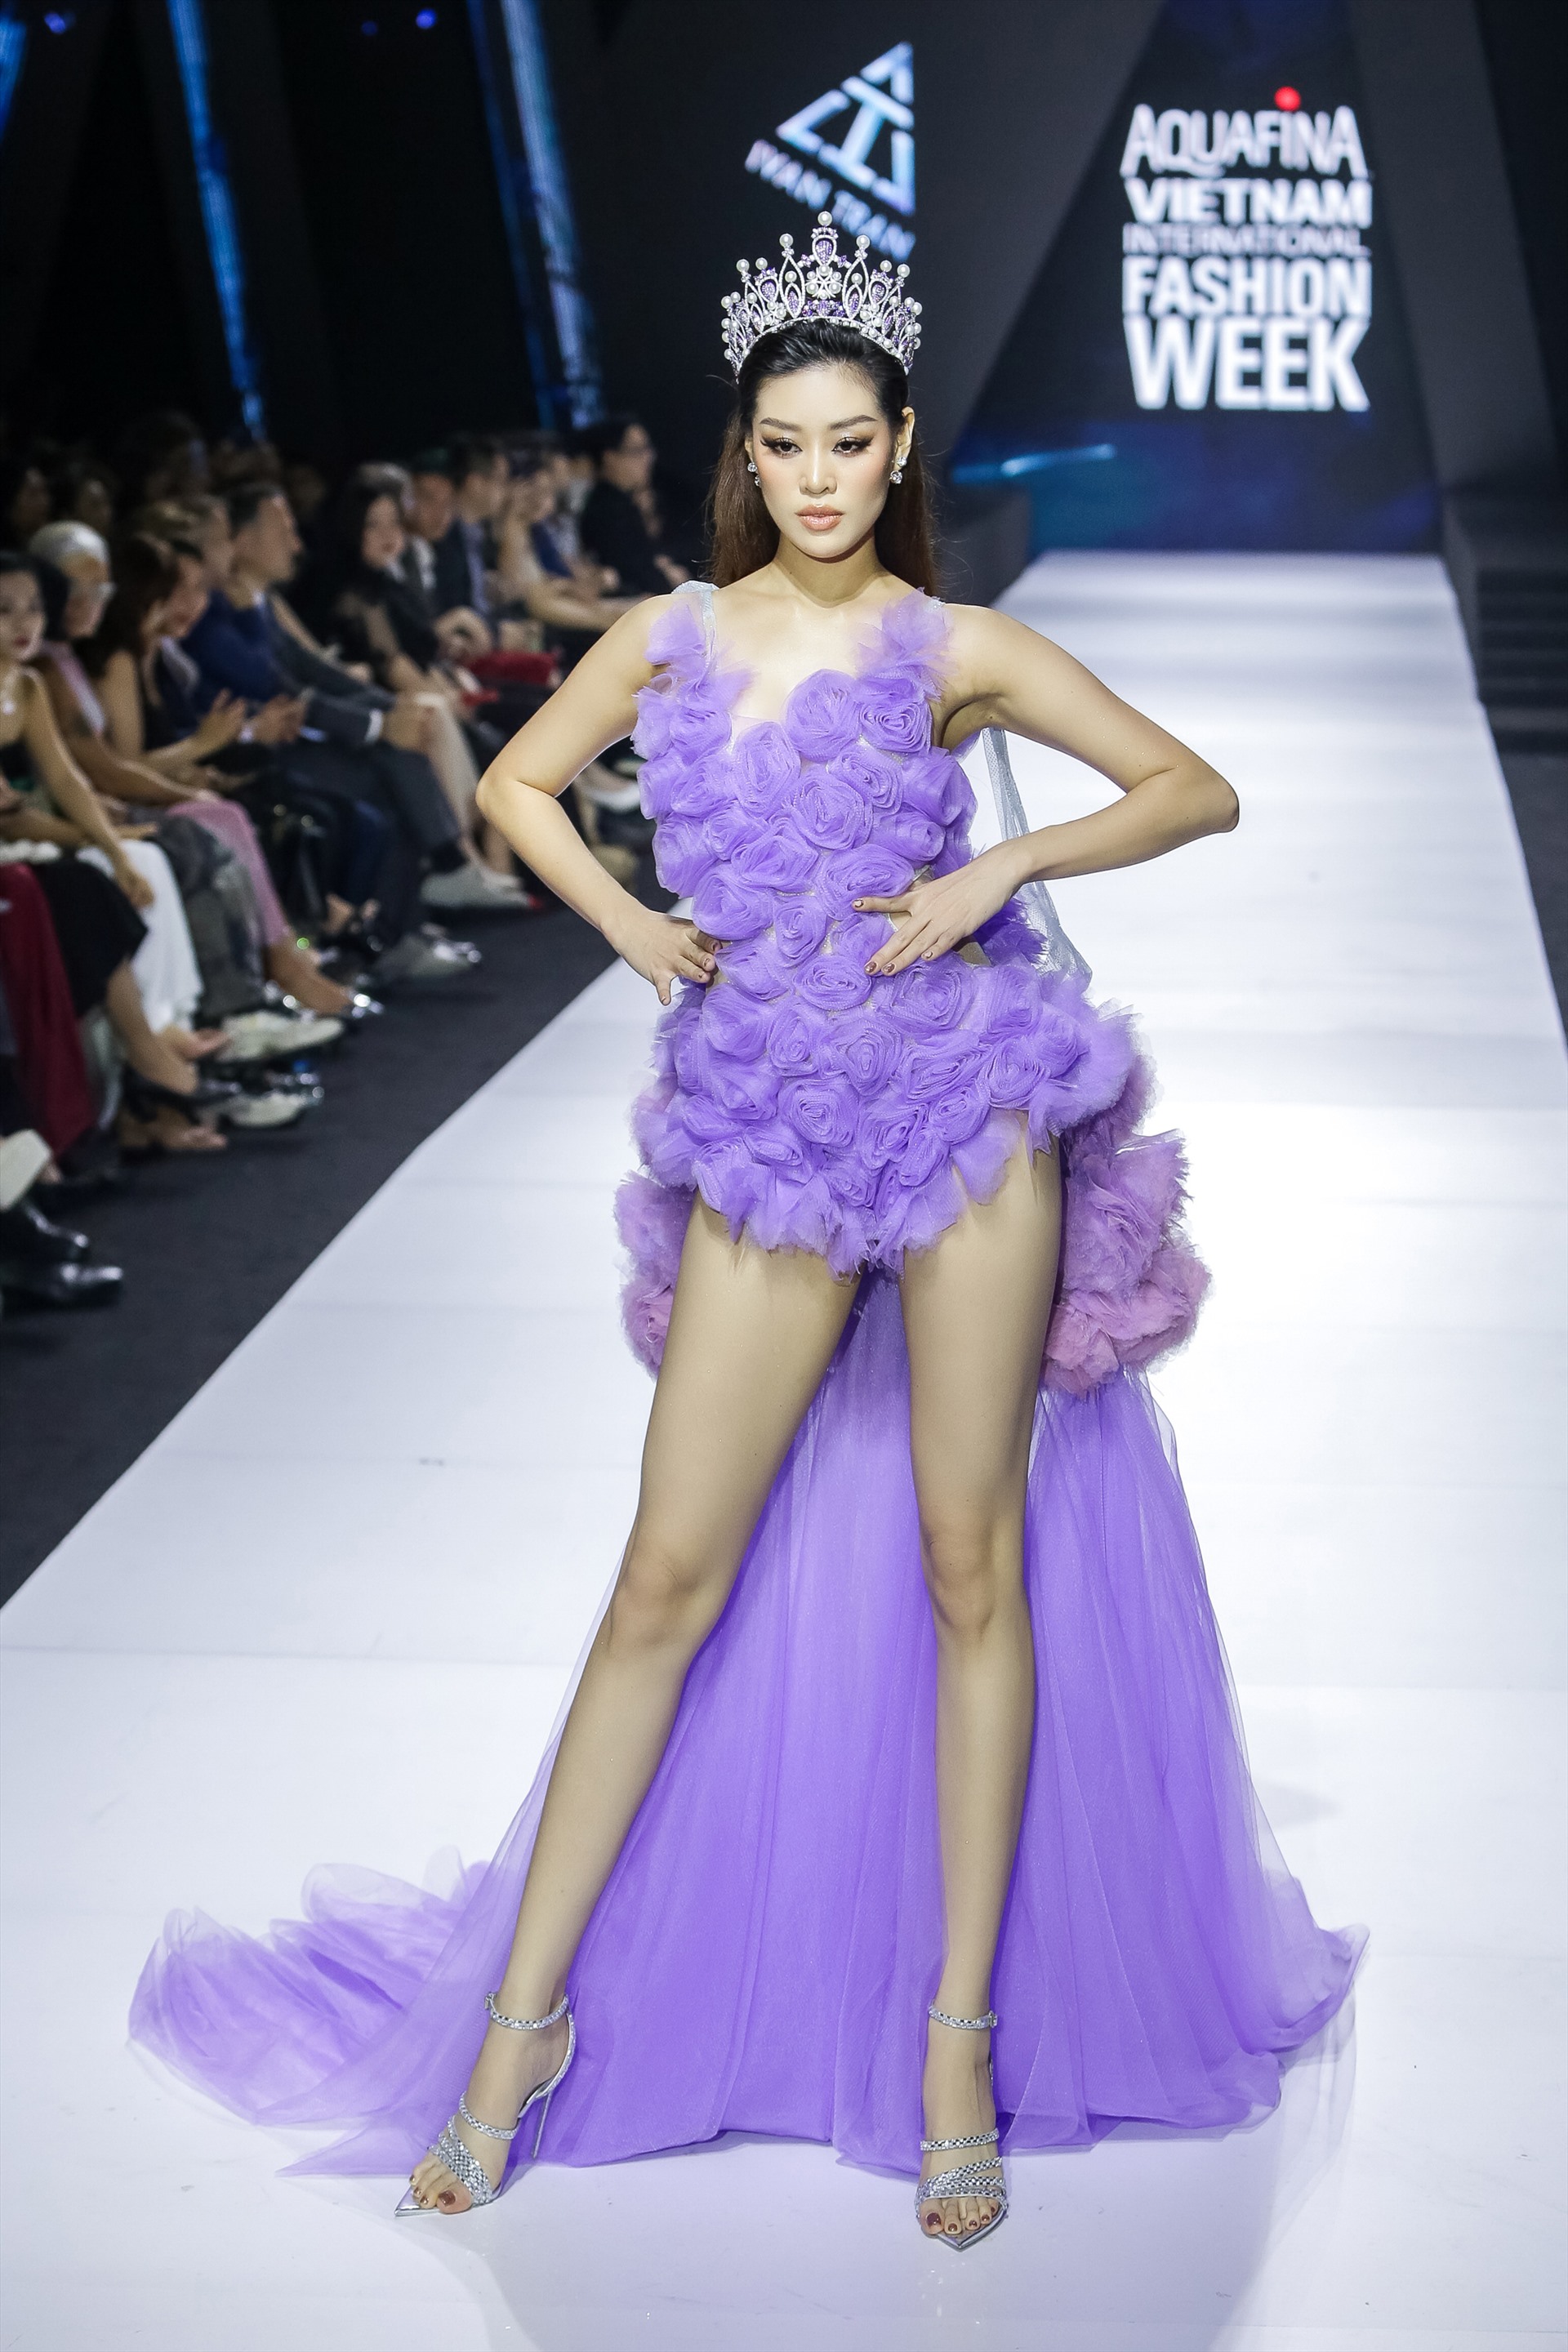 Khánh Vân đảm nhận vị trí first face cho đêm trình diễn GAI của Ivan Trần tại Tuần lễ thời trang quốc tế Việt Nam 2023. Cô làm bừng sáng cả hội trường ngay khi xuất hiện với bộ váy đính gần một trăm hoa hồng tông màu tím dịu mát.  